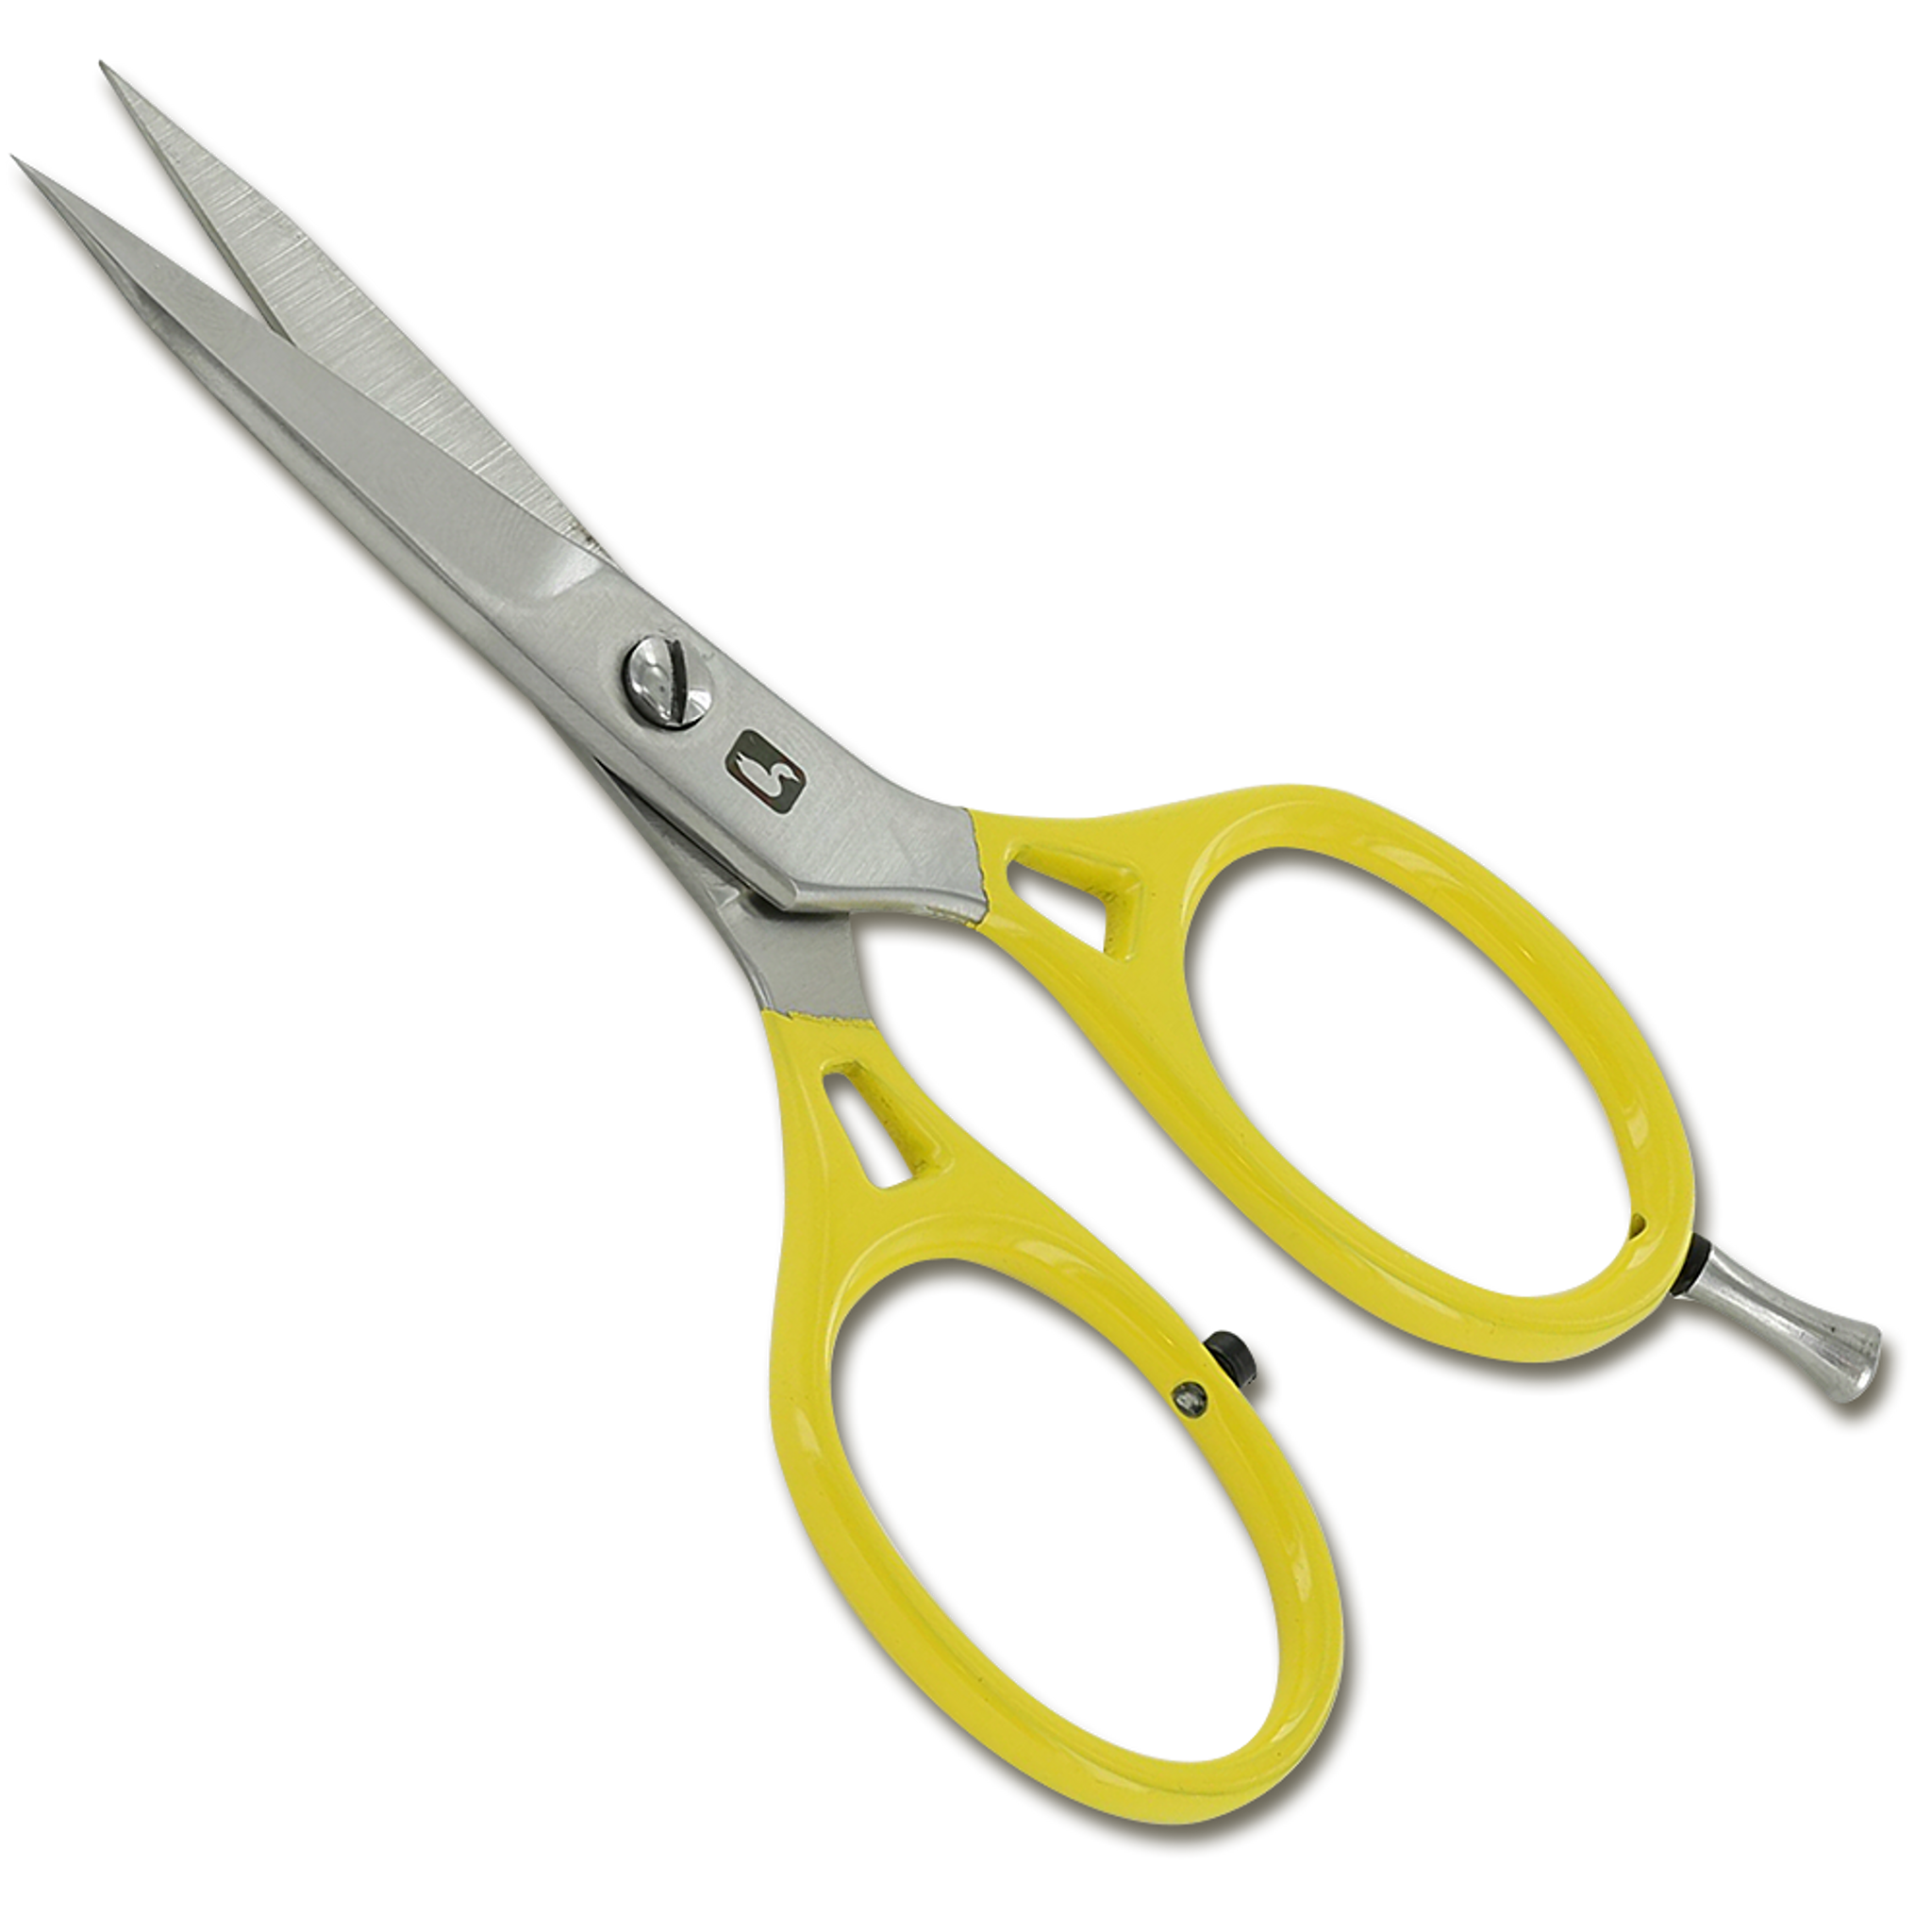 Loon Ergonomic All Purpose Scissors